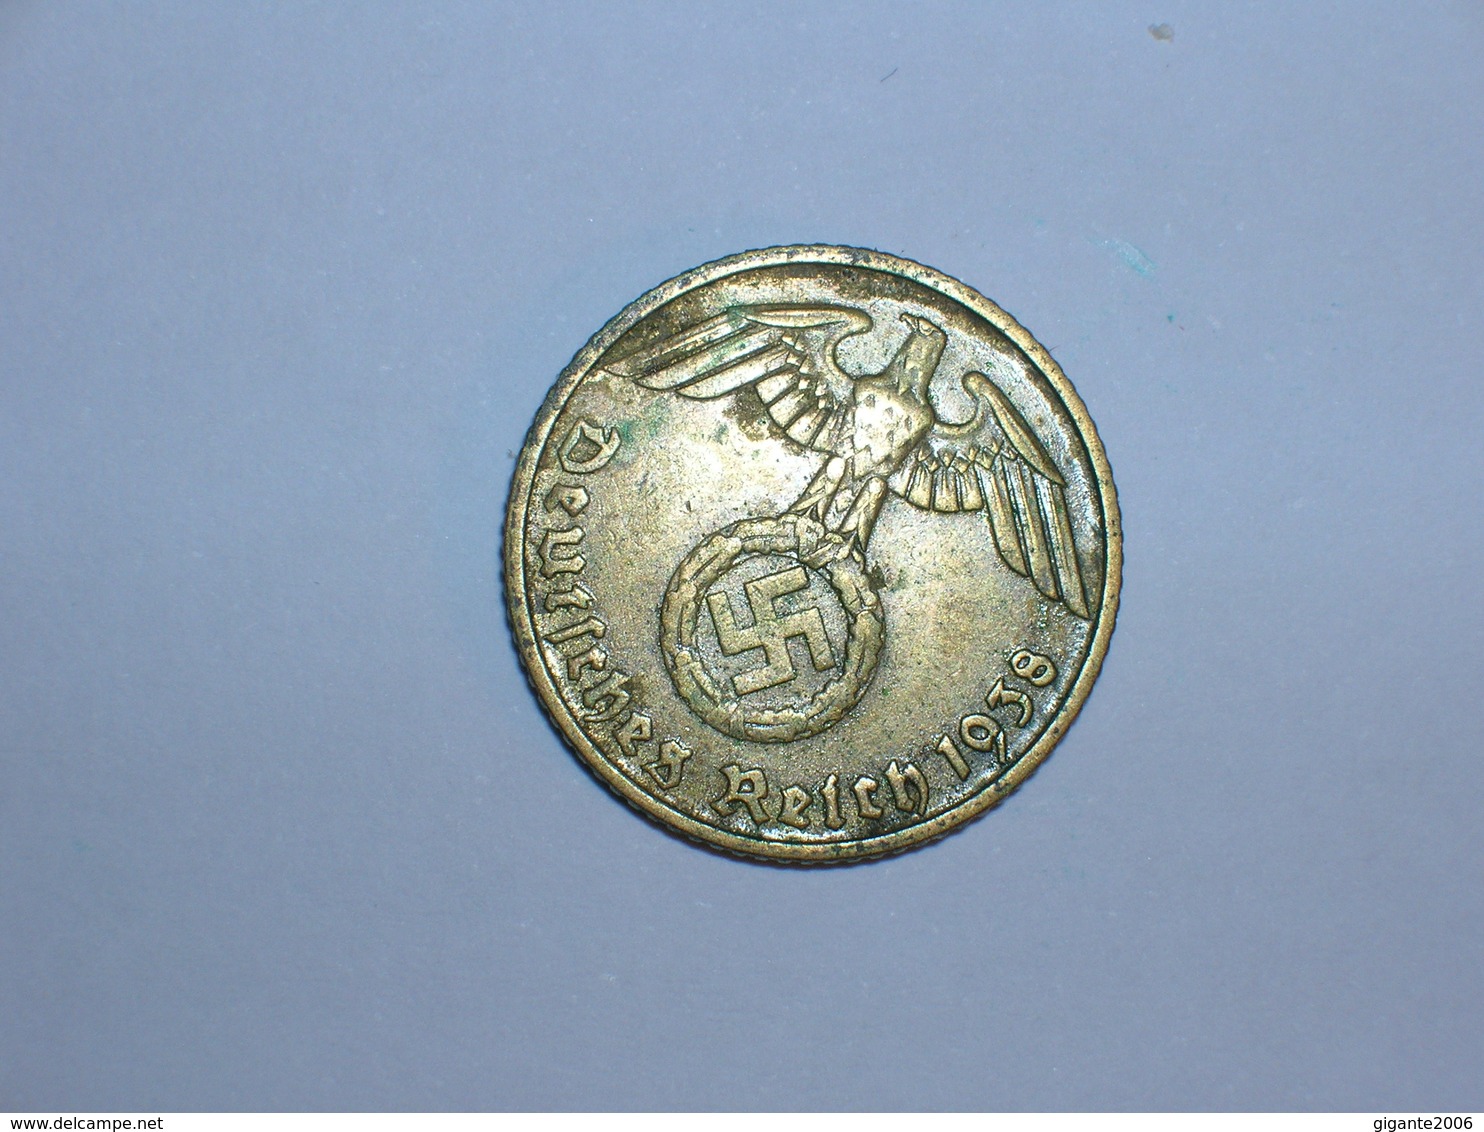 ALEMANIA- 5 PFENNIG 1938 D (899) - 5 Reichspfennig